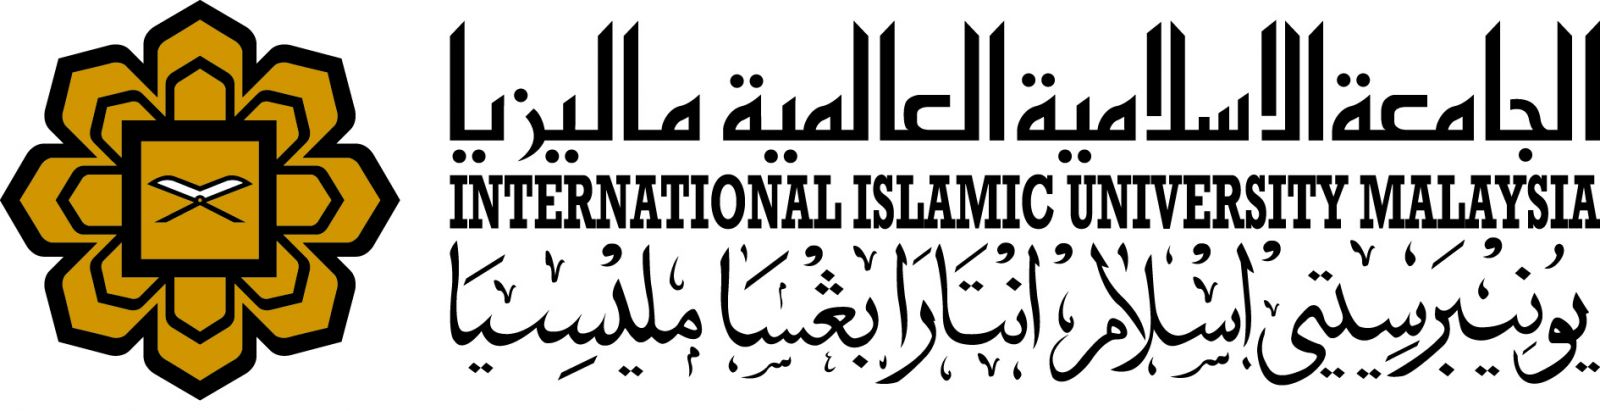 Universiti Islam Antarabangsa Malaysia (UIAM) logo